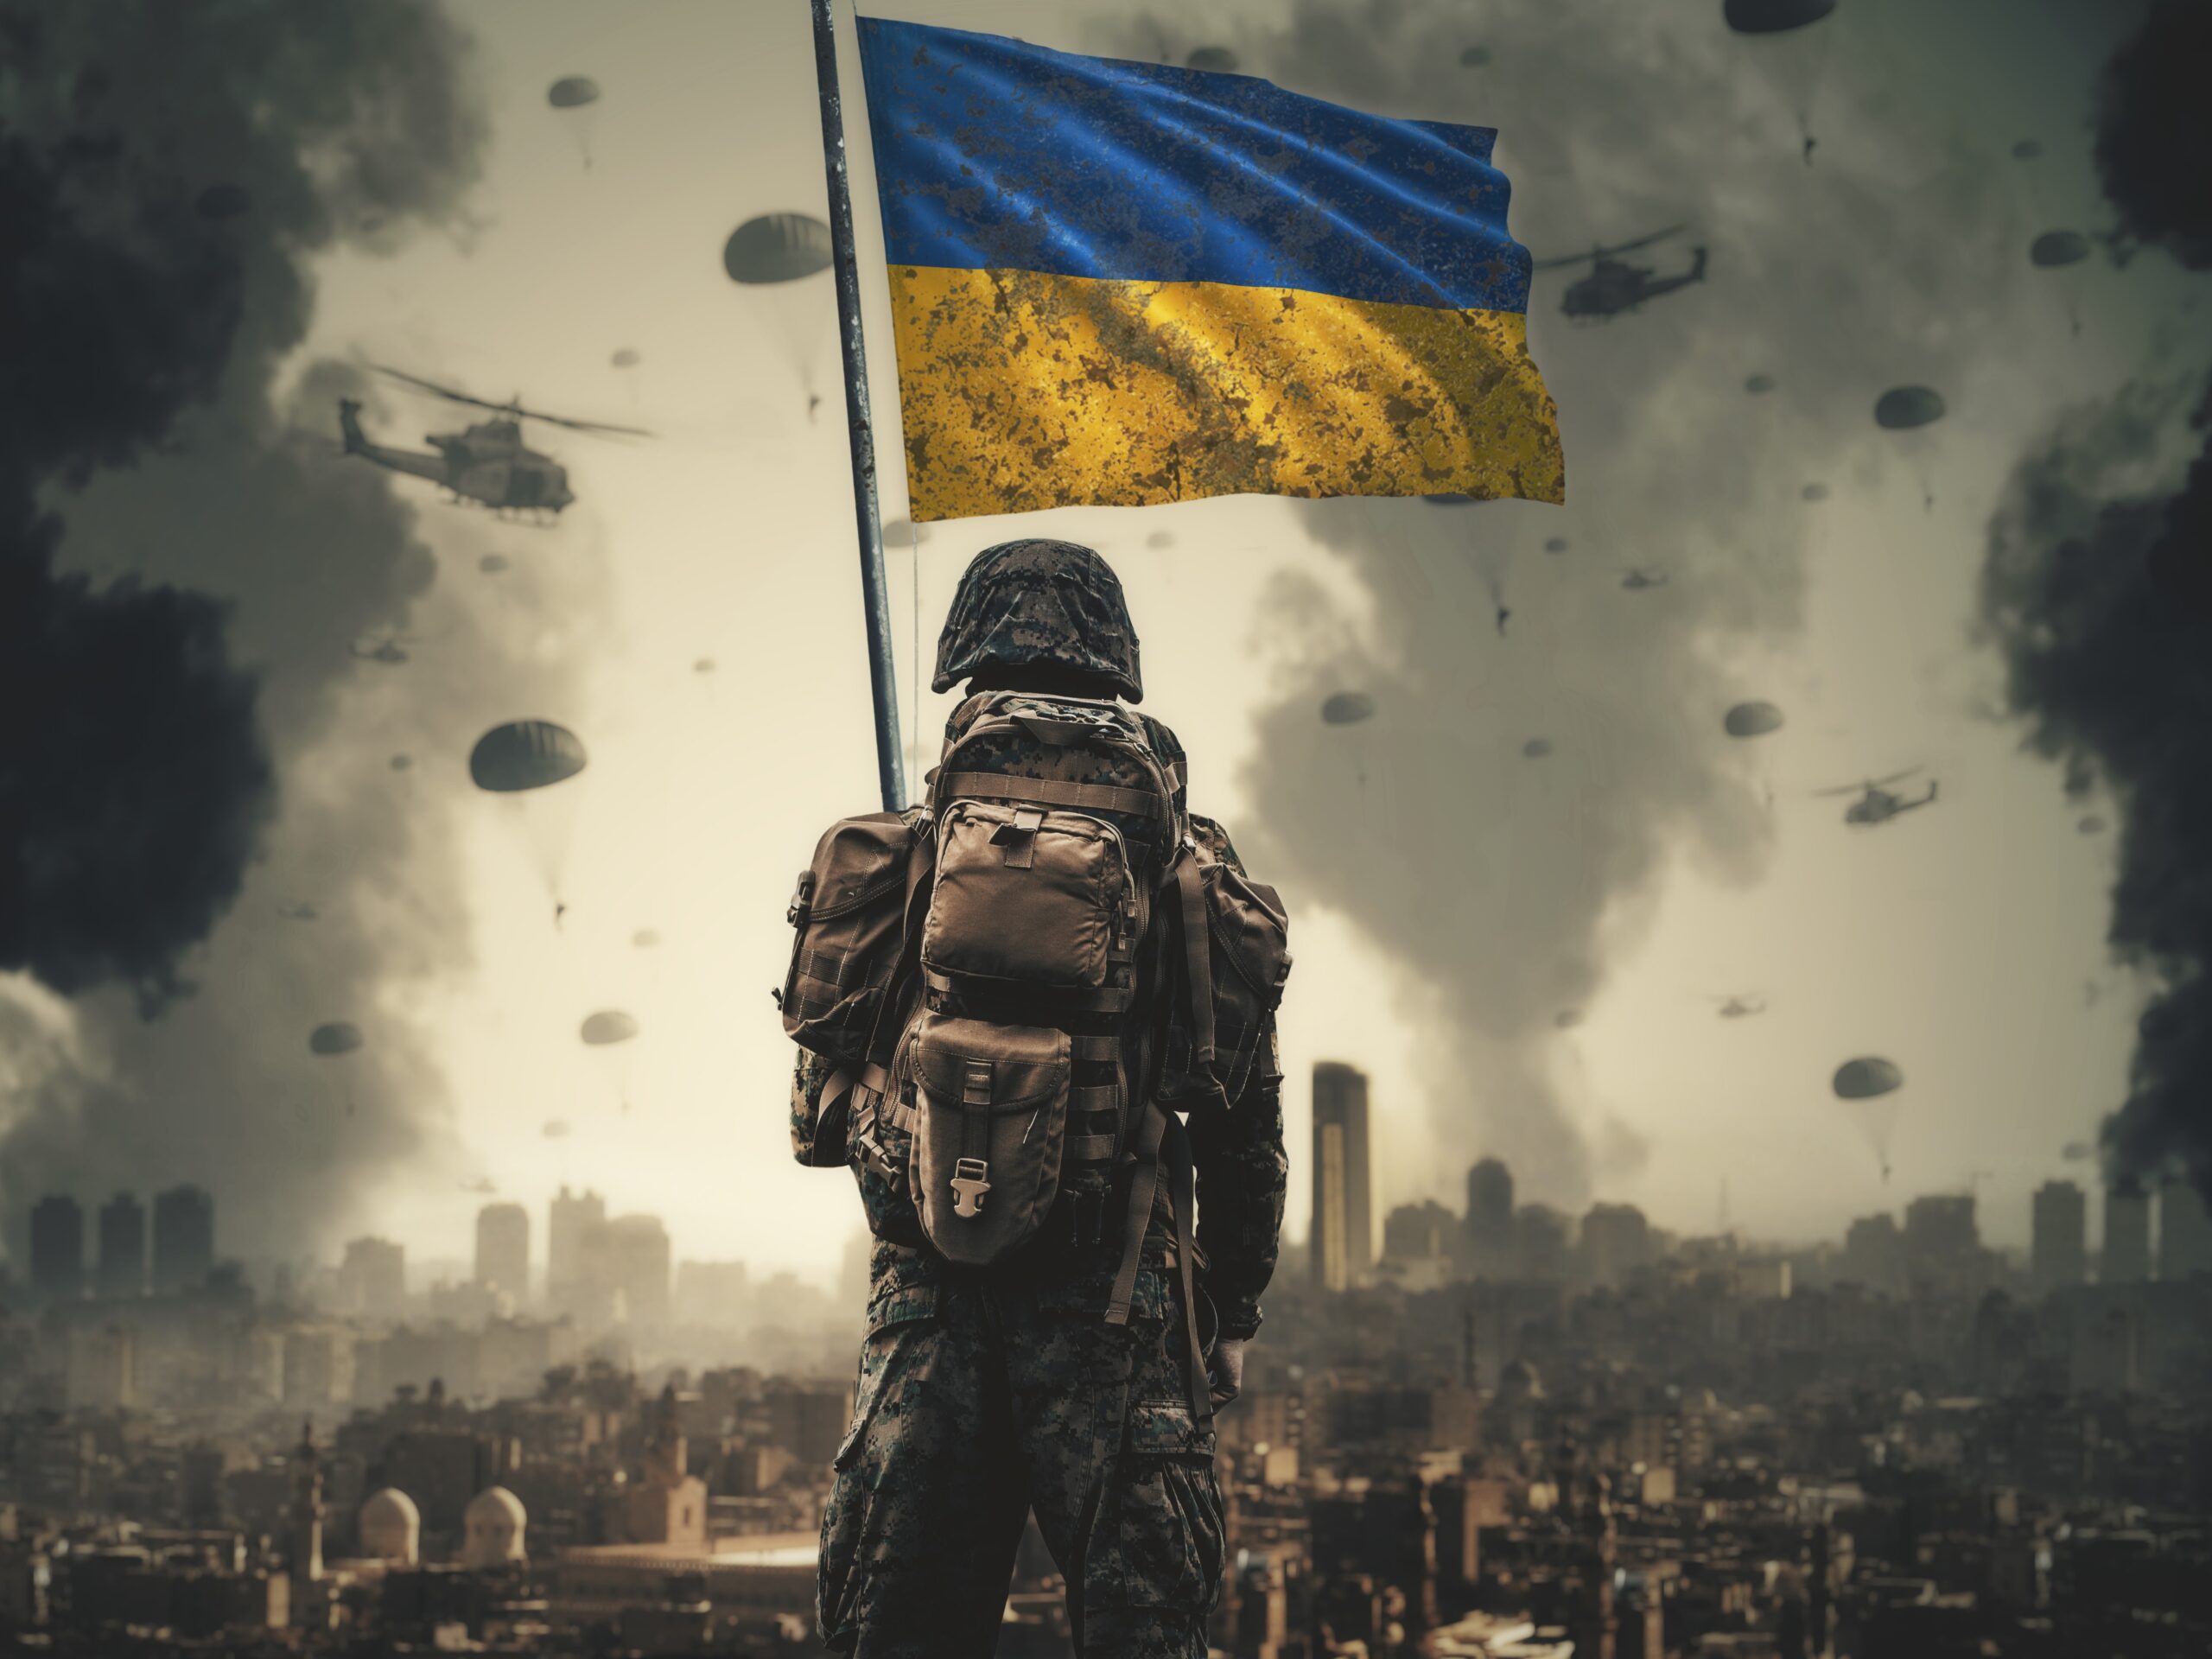 Vojna na Ukrajine. Ruská agresia na Ukrajine.